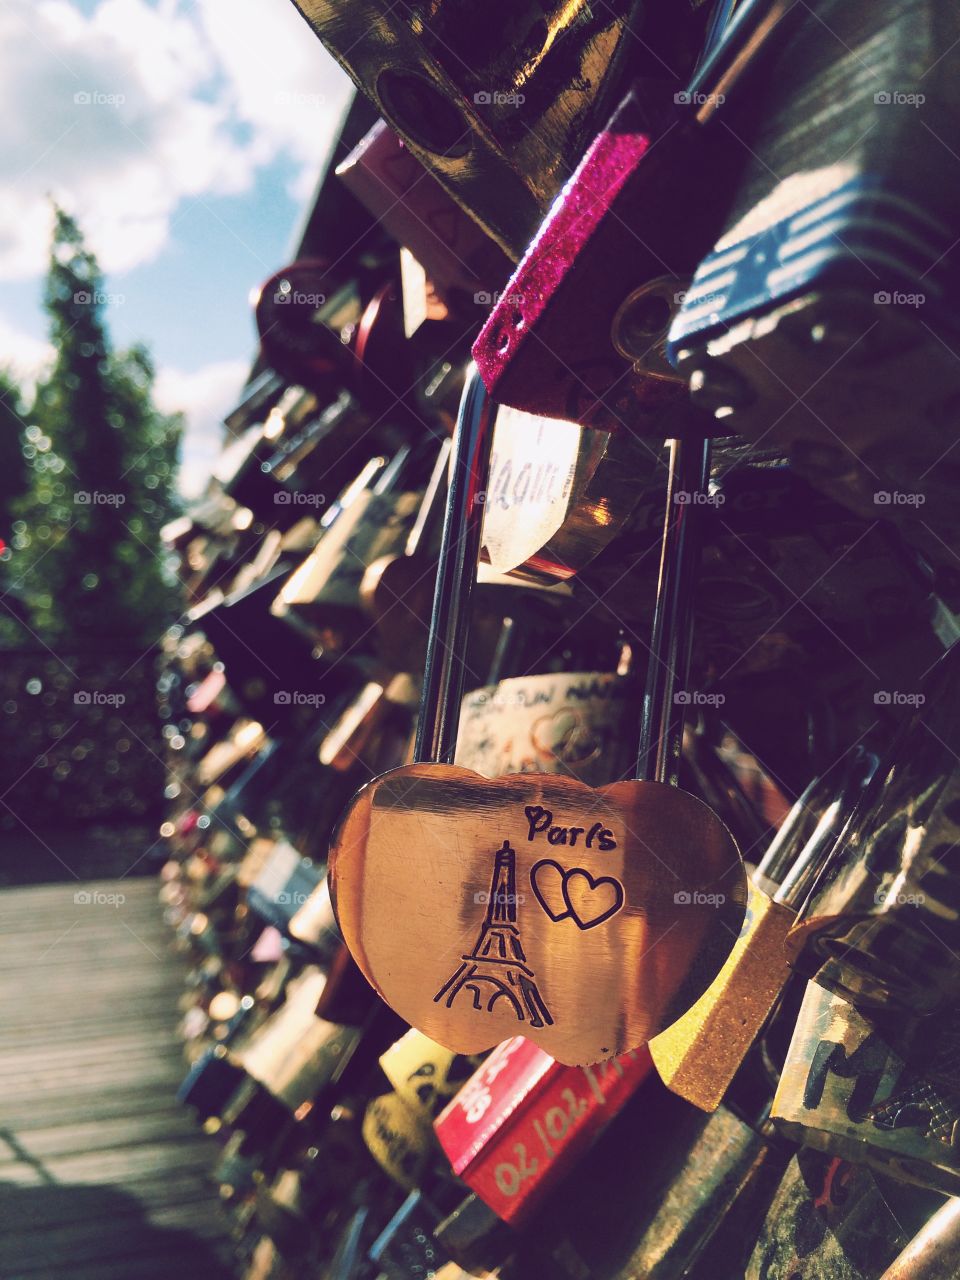 Love lock bridge in Paris 